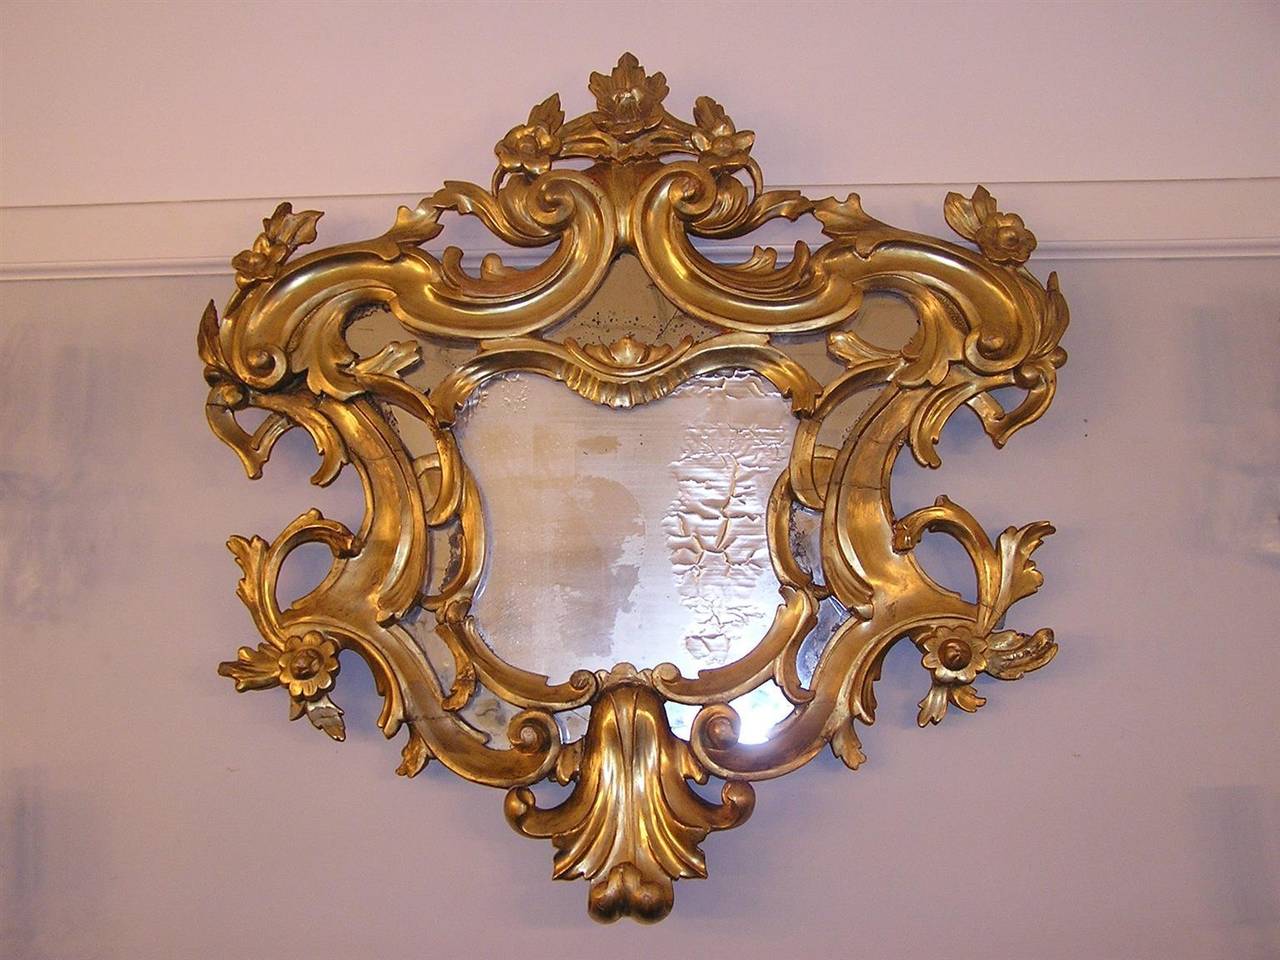 Englisch geschnitztes Holz vergoldet dekorative florale Wandspiegel mit original Glas und Holz zurück. Ende des 18. Jahrhunderts.